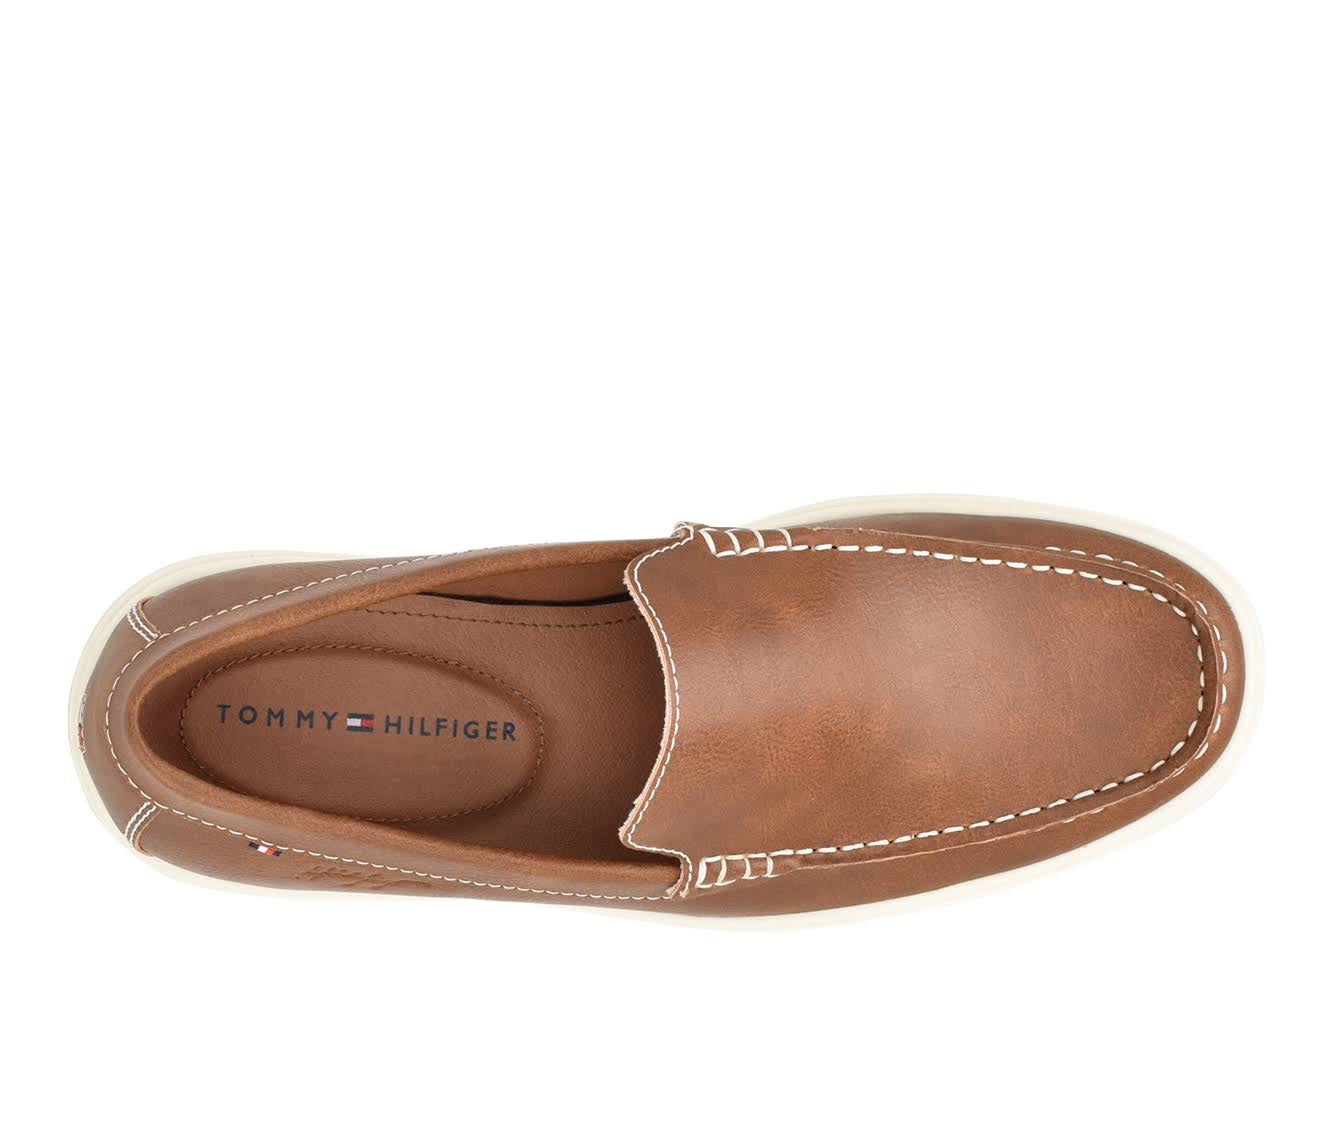 Tommy Hilfiger shoes for men